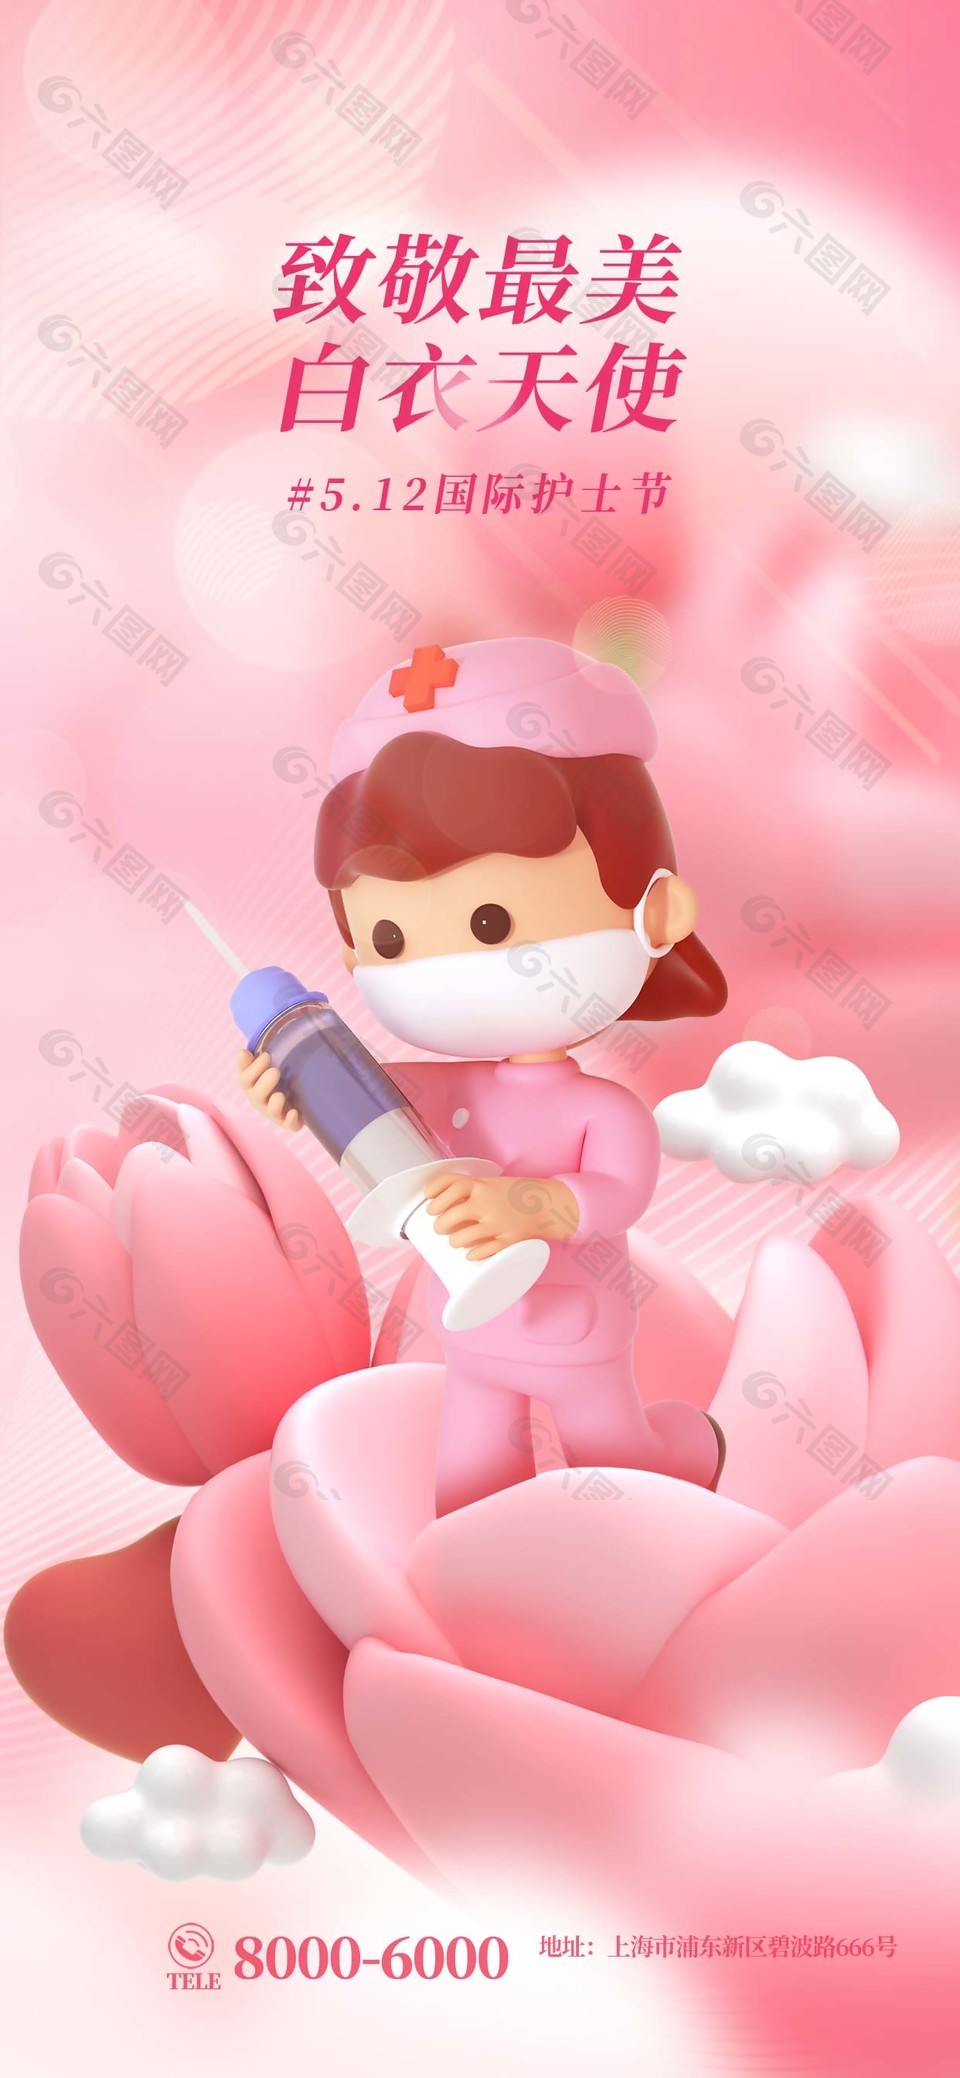 国际护士节主题粉色渐变海报图片大全